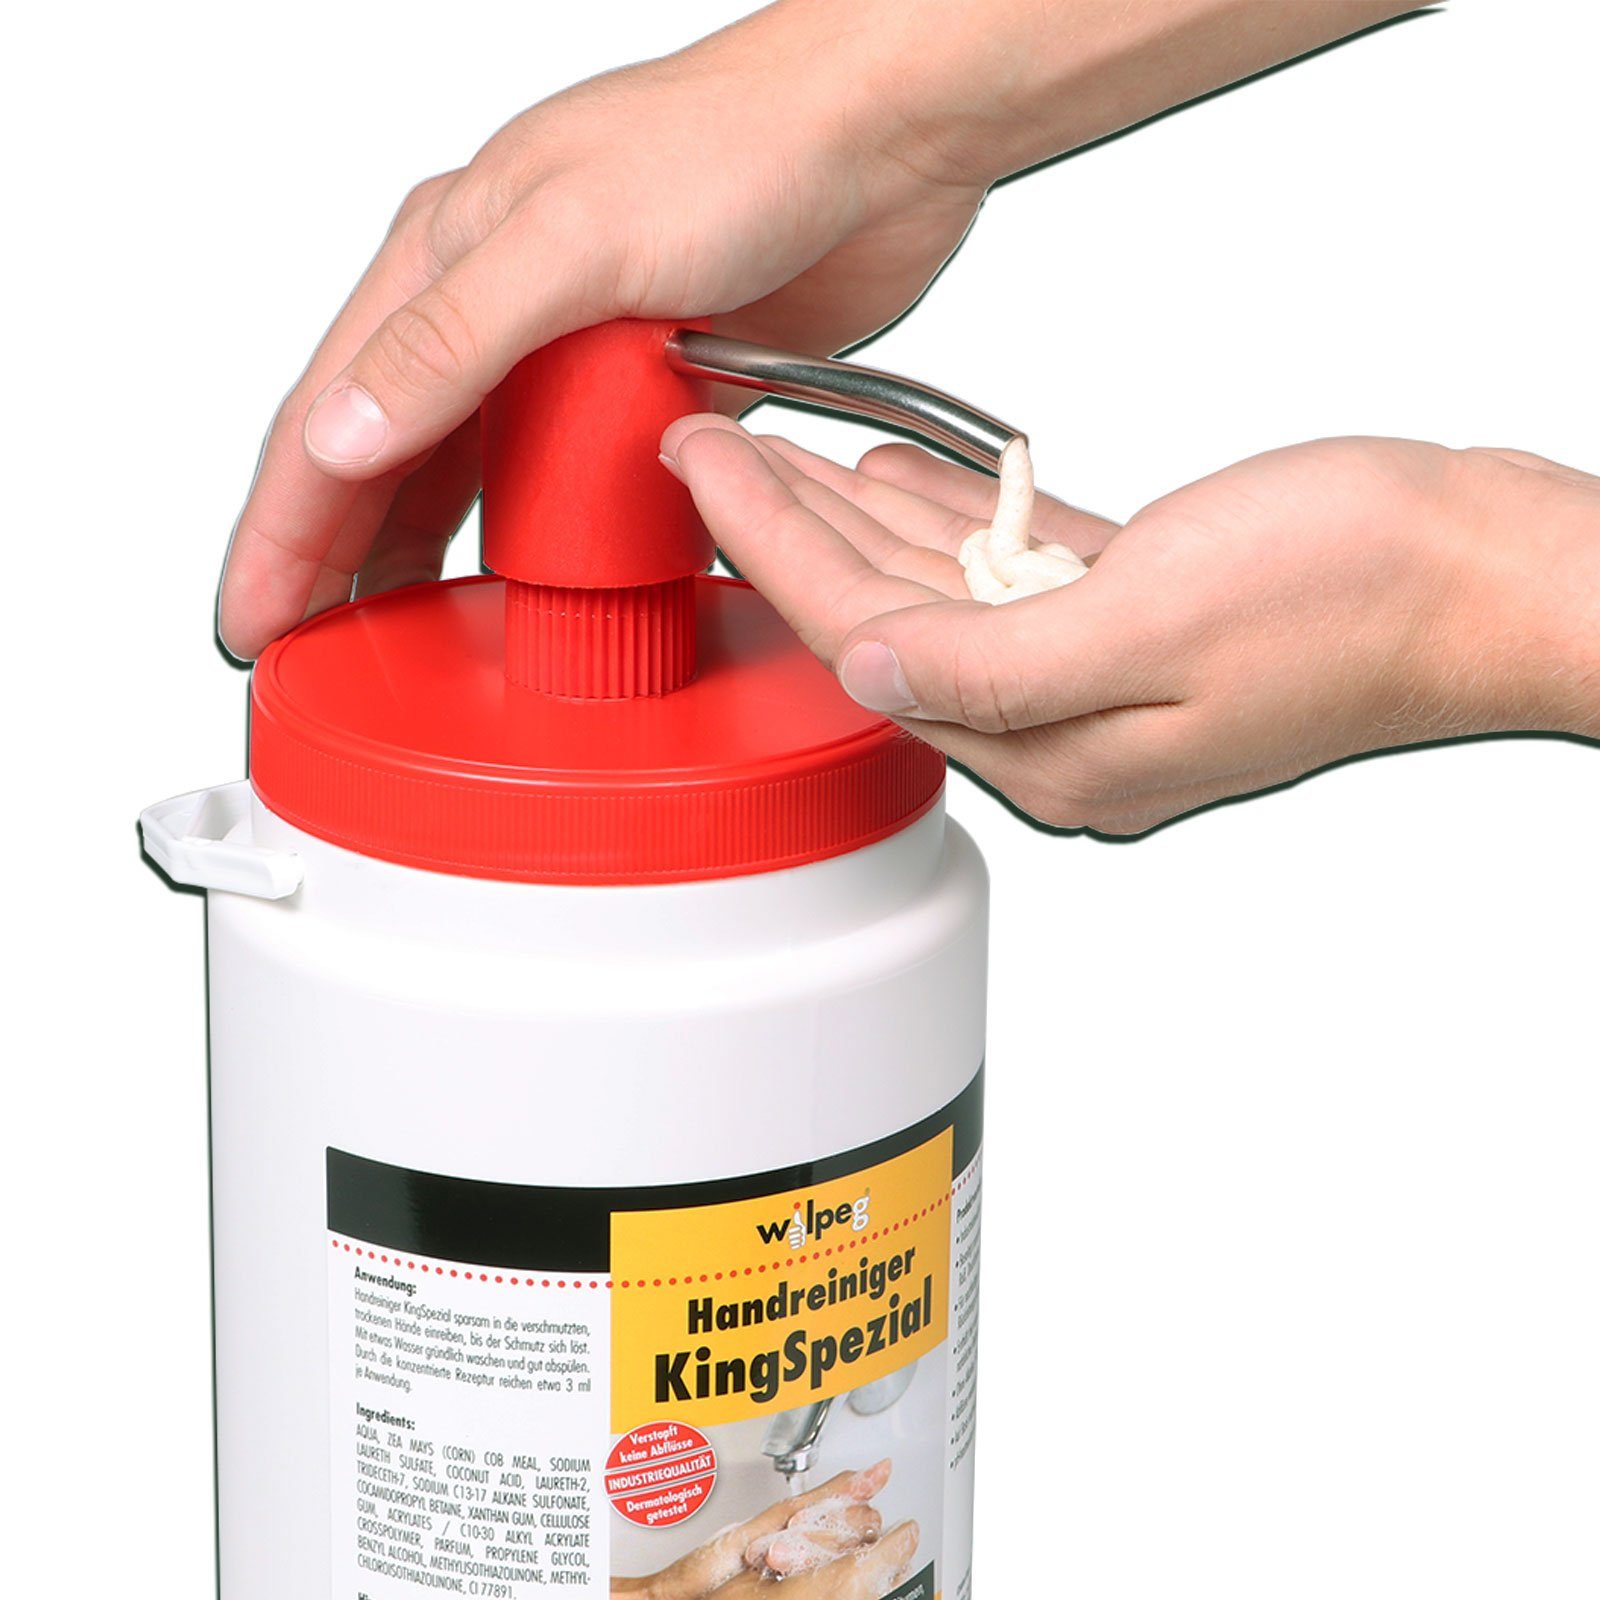 wilpeg® Handcreme Handreiniger KingSpezial 6L Reinigungspaste Handwaschpaste + Spender